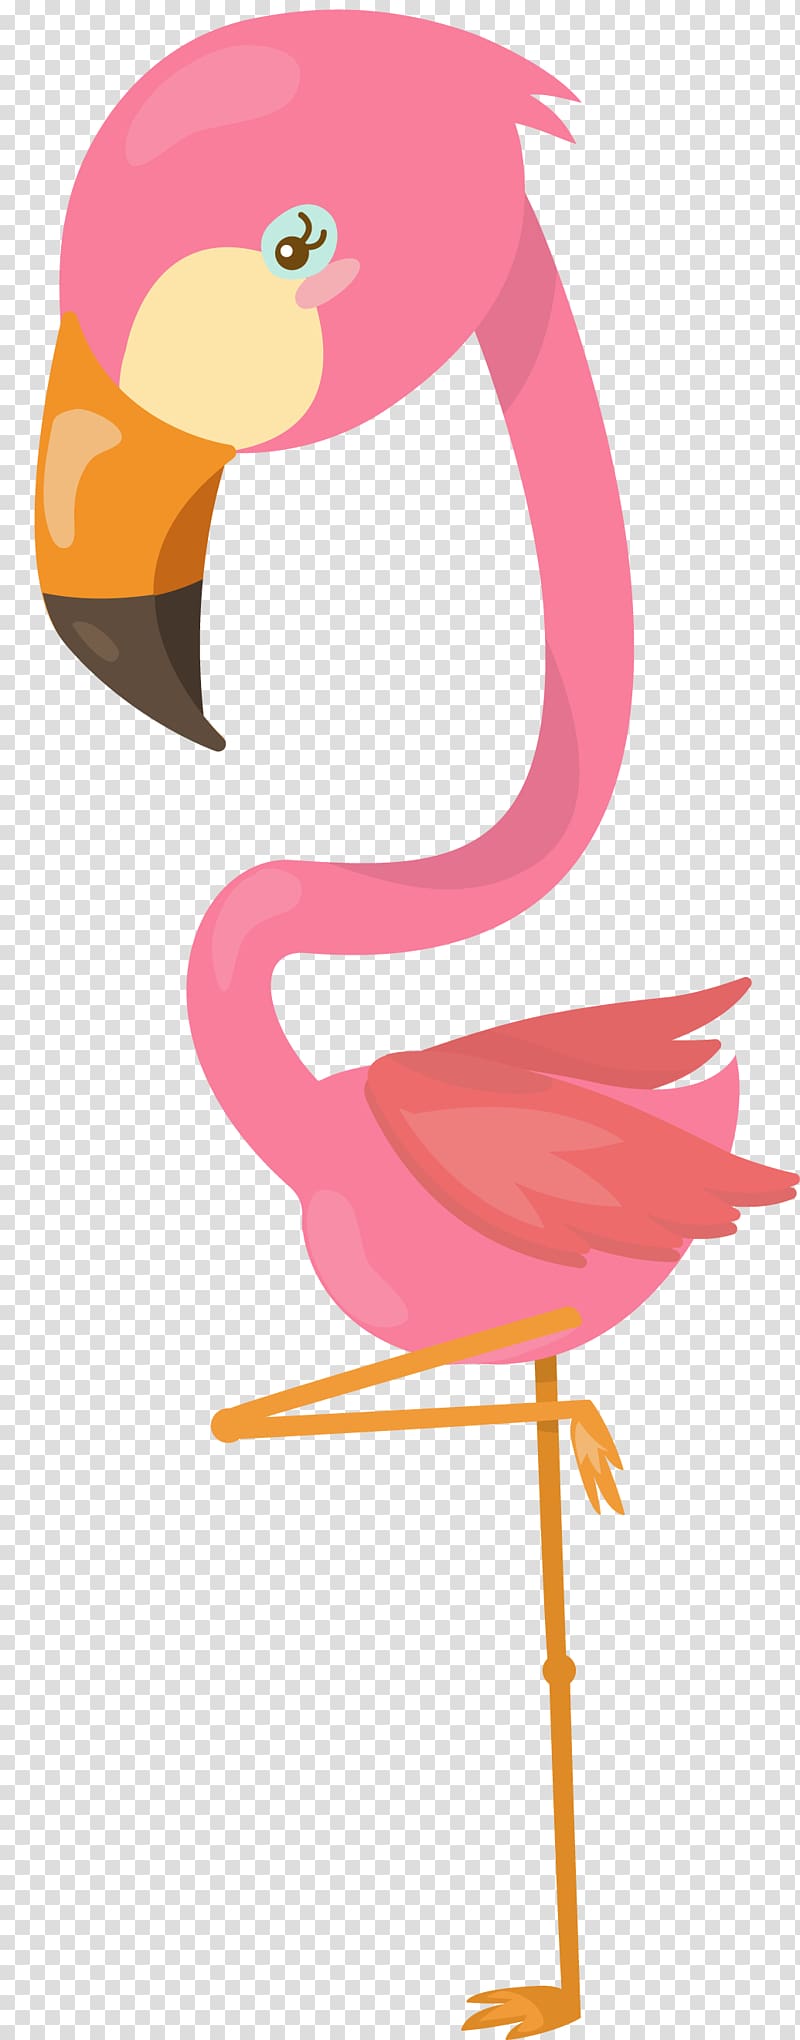 Flamingos Water bird Beak, flamingo transparent background PNG clipart